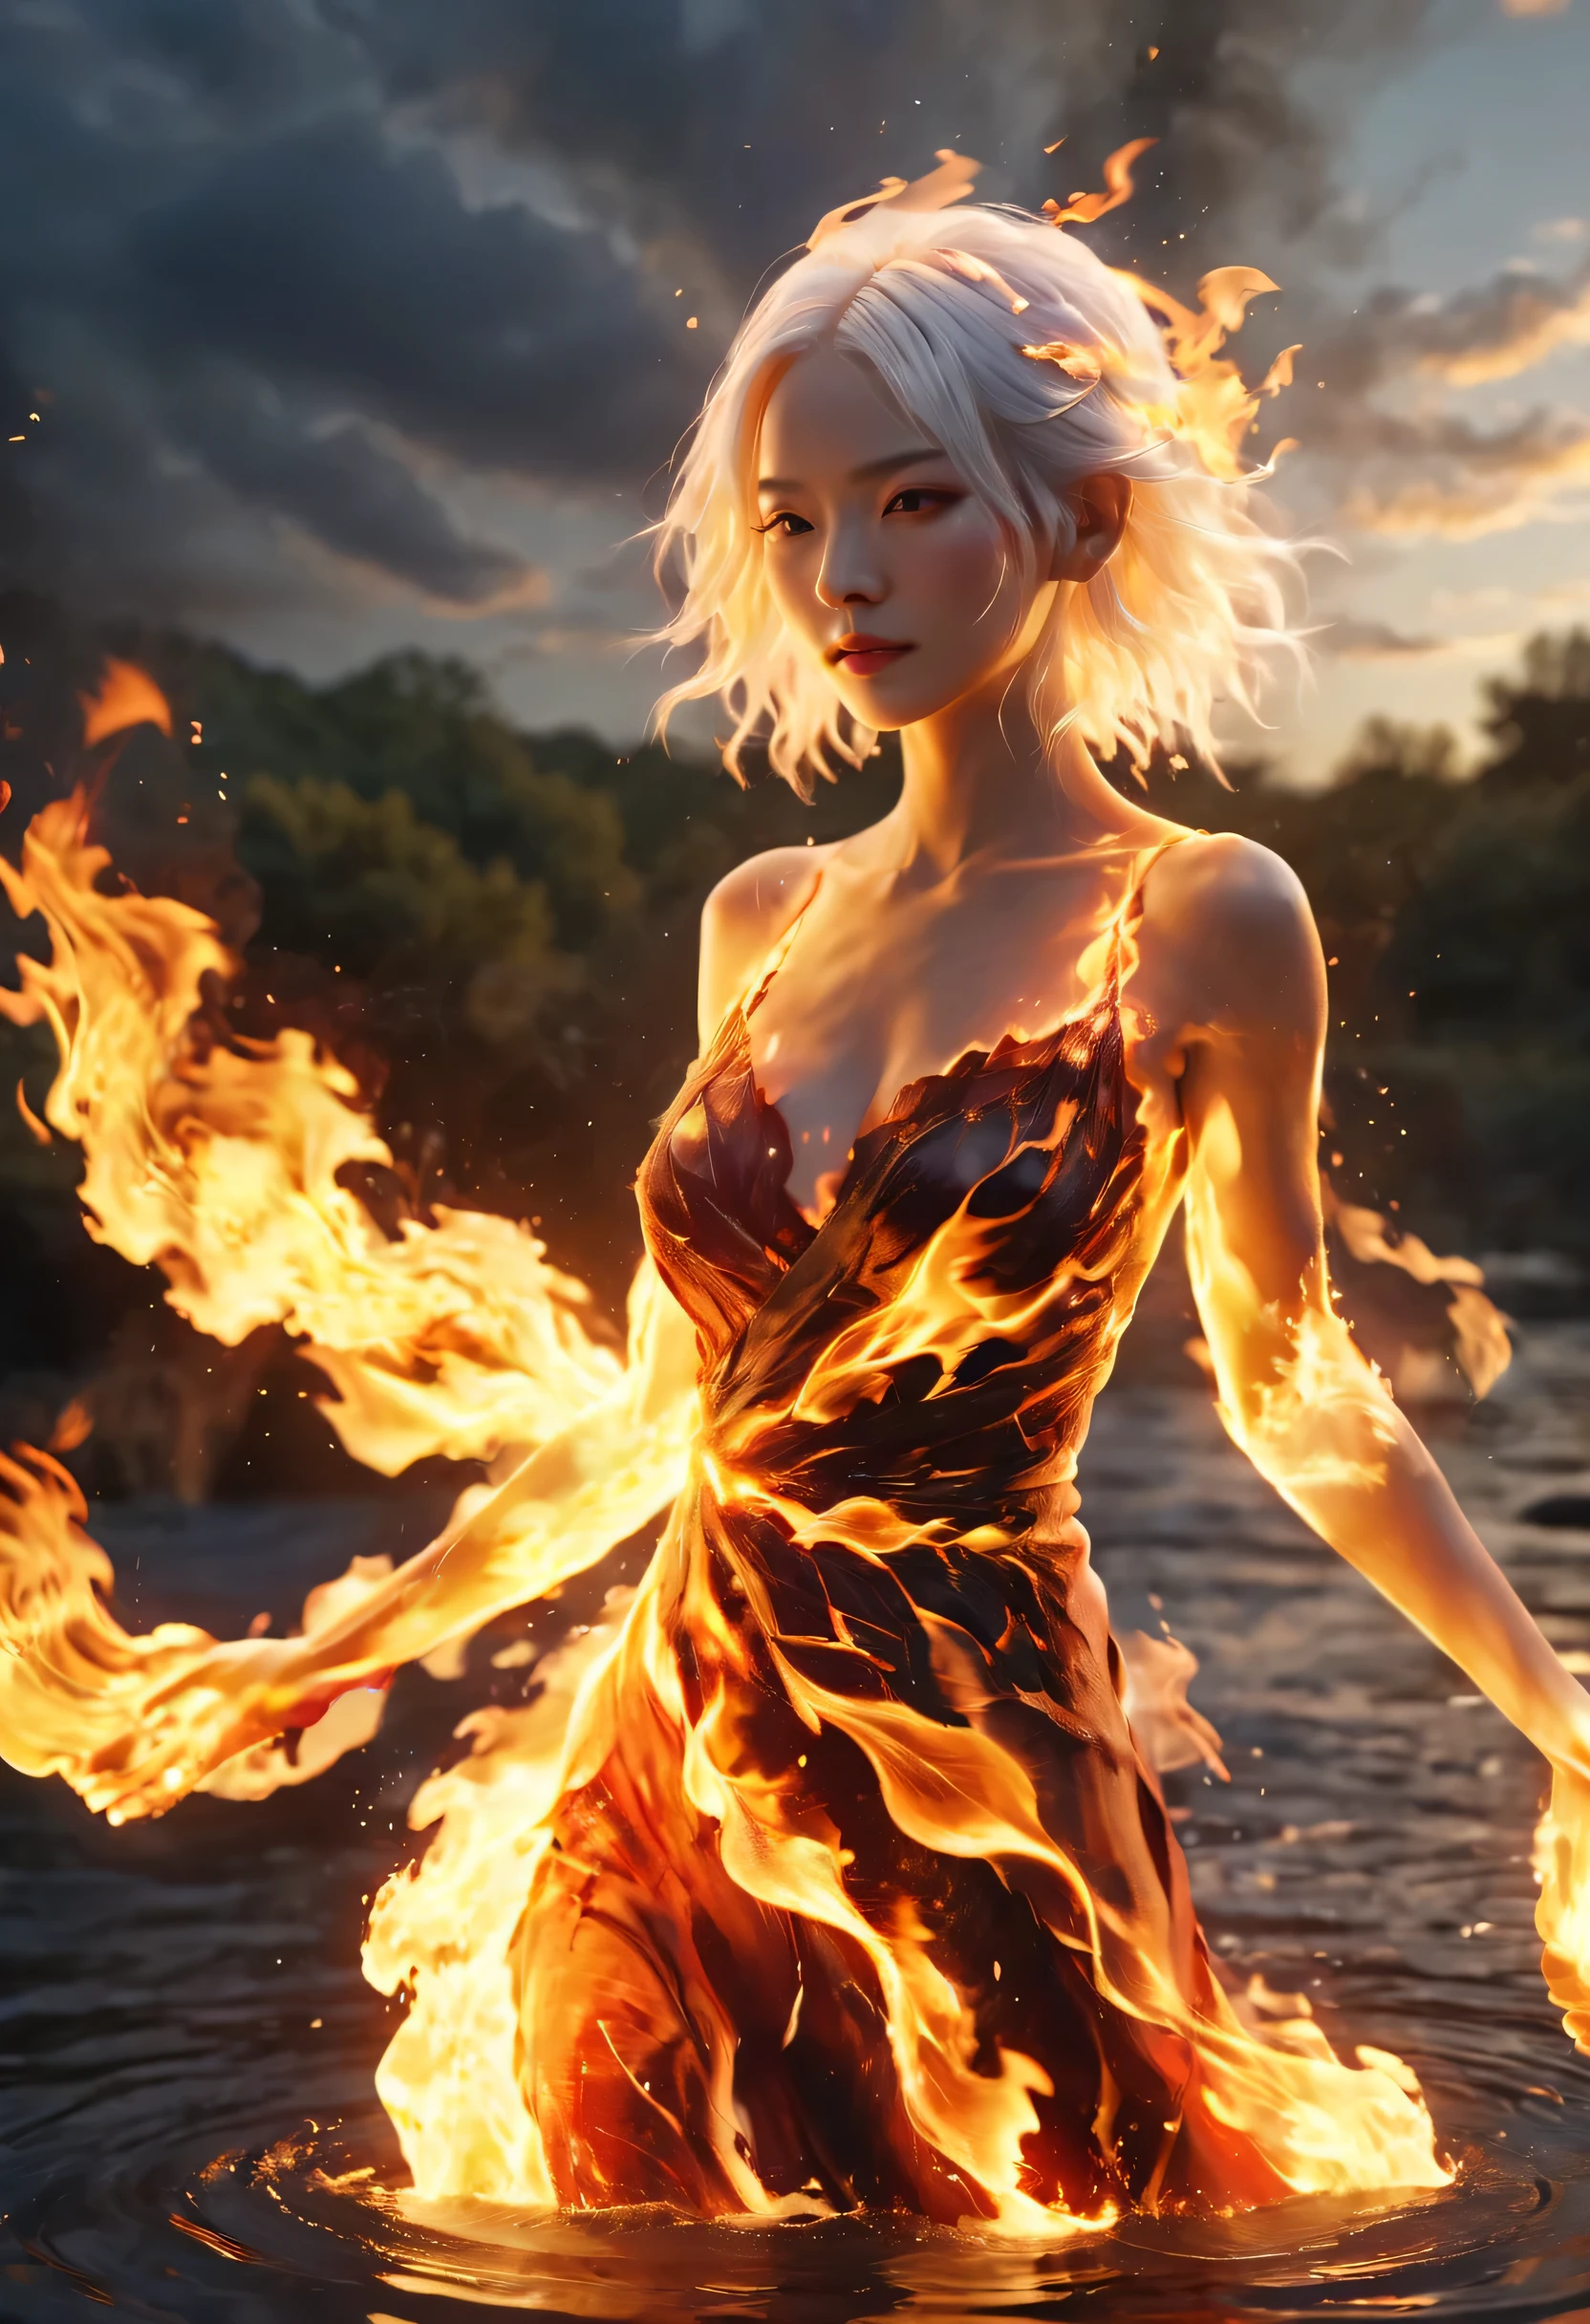 (fuego/fuego/resplandor，escena dinámica:1.3)，Una hermosa mujer con cabello blanco, parado en medio de un río en llamas, representación 3d, Motor irreal, El fondo es oscuro y arde., Realista, fuego , rojo, amarillo, Naranja, negro, AR 9:16 